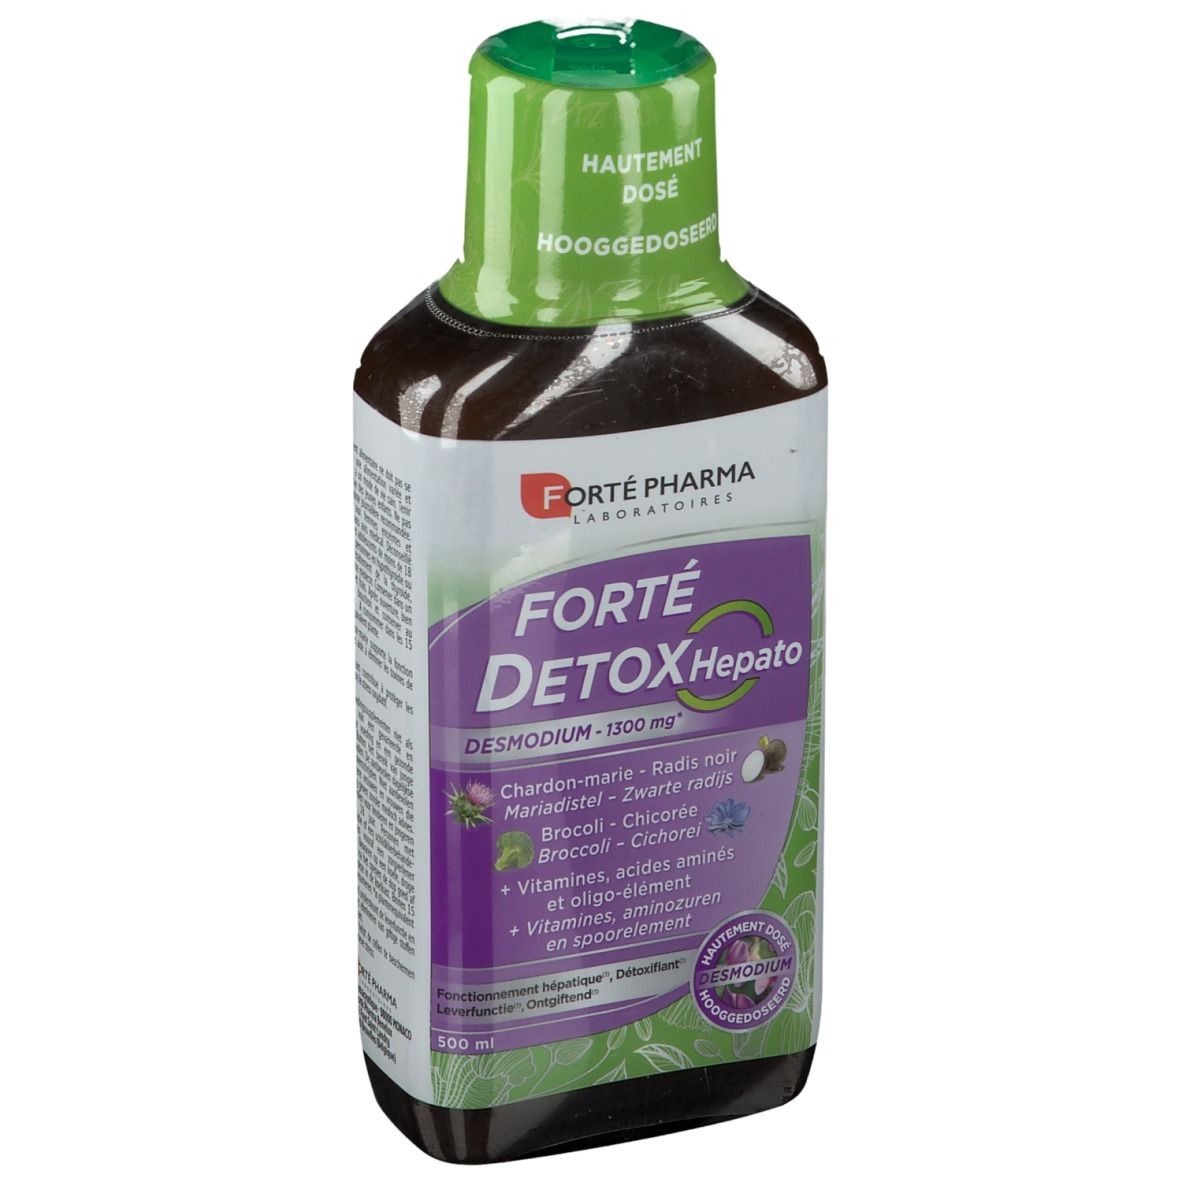 Forte Pharma Forte Detox Foie